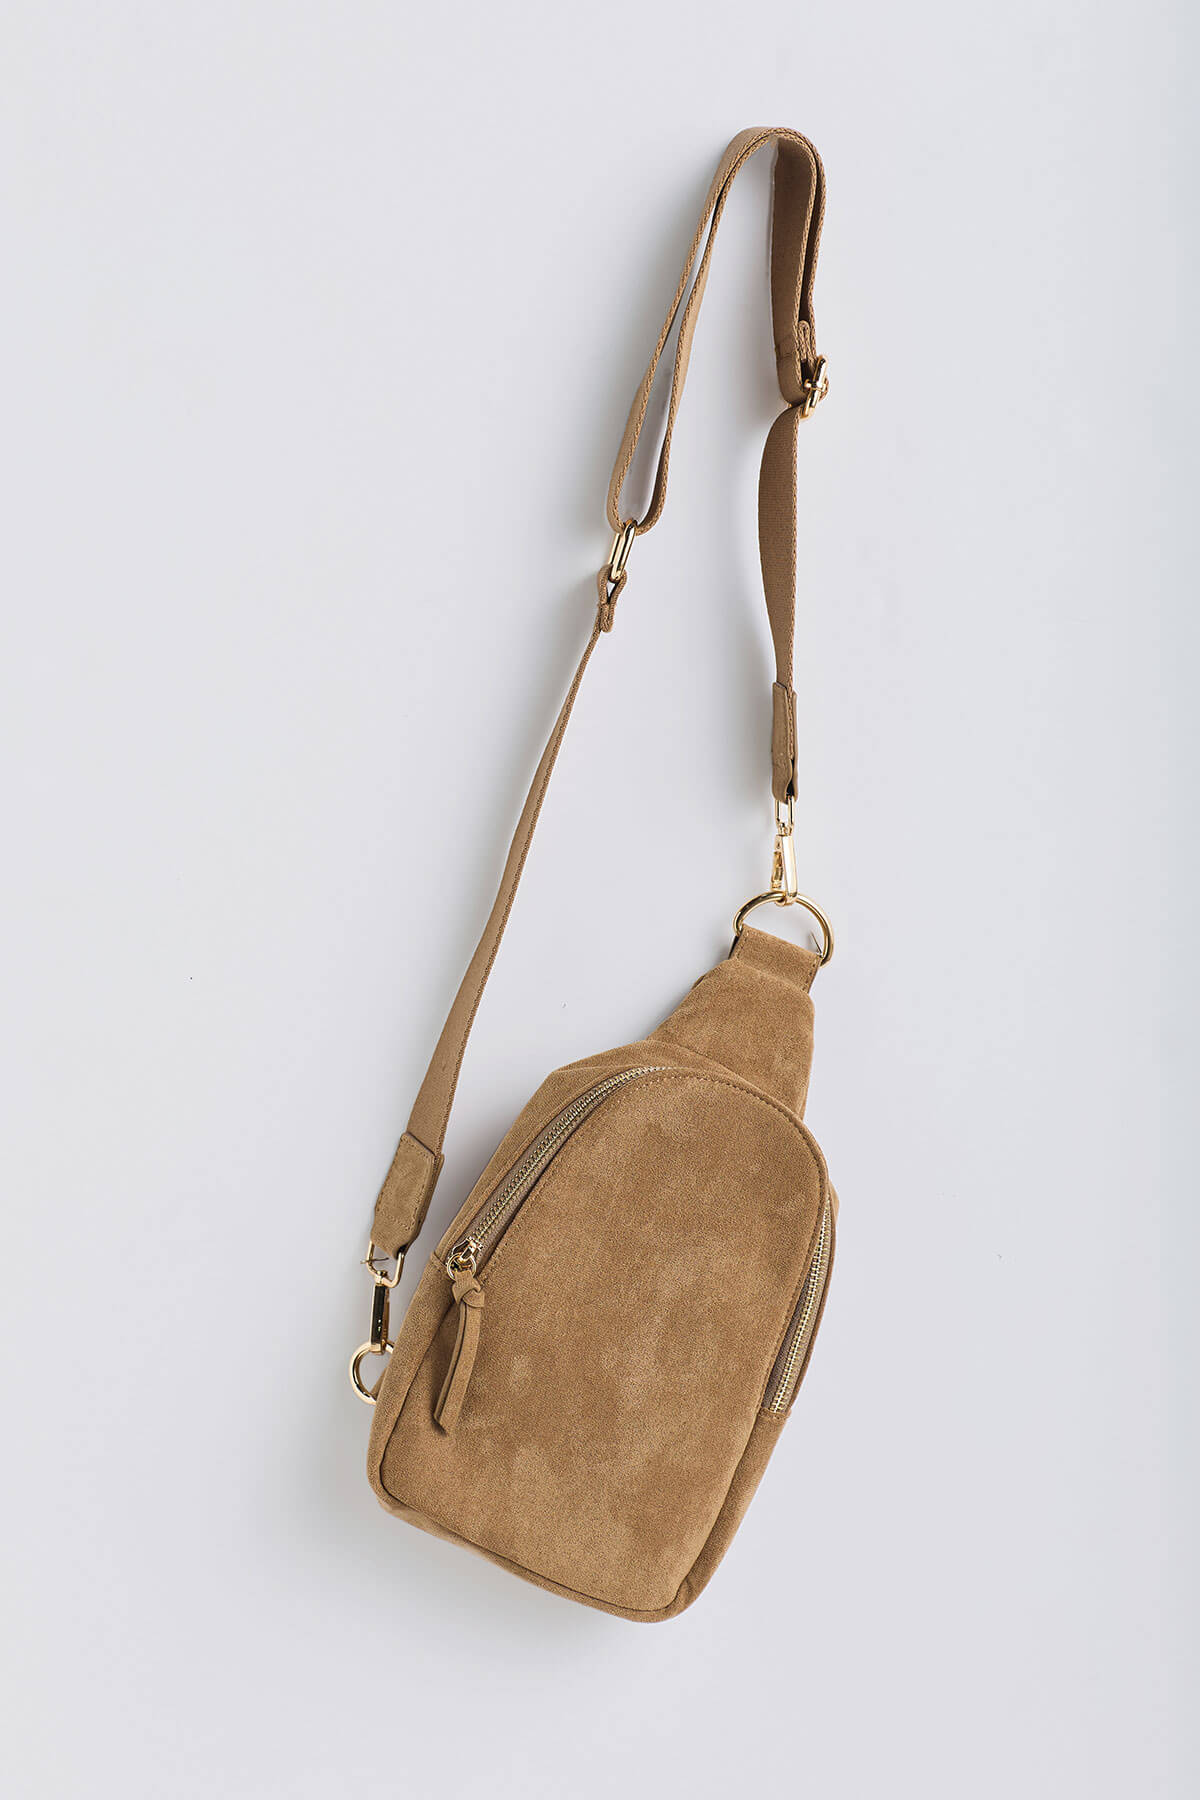 Buy Brown Sling Bag Online|Best Prices